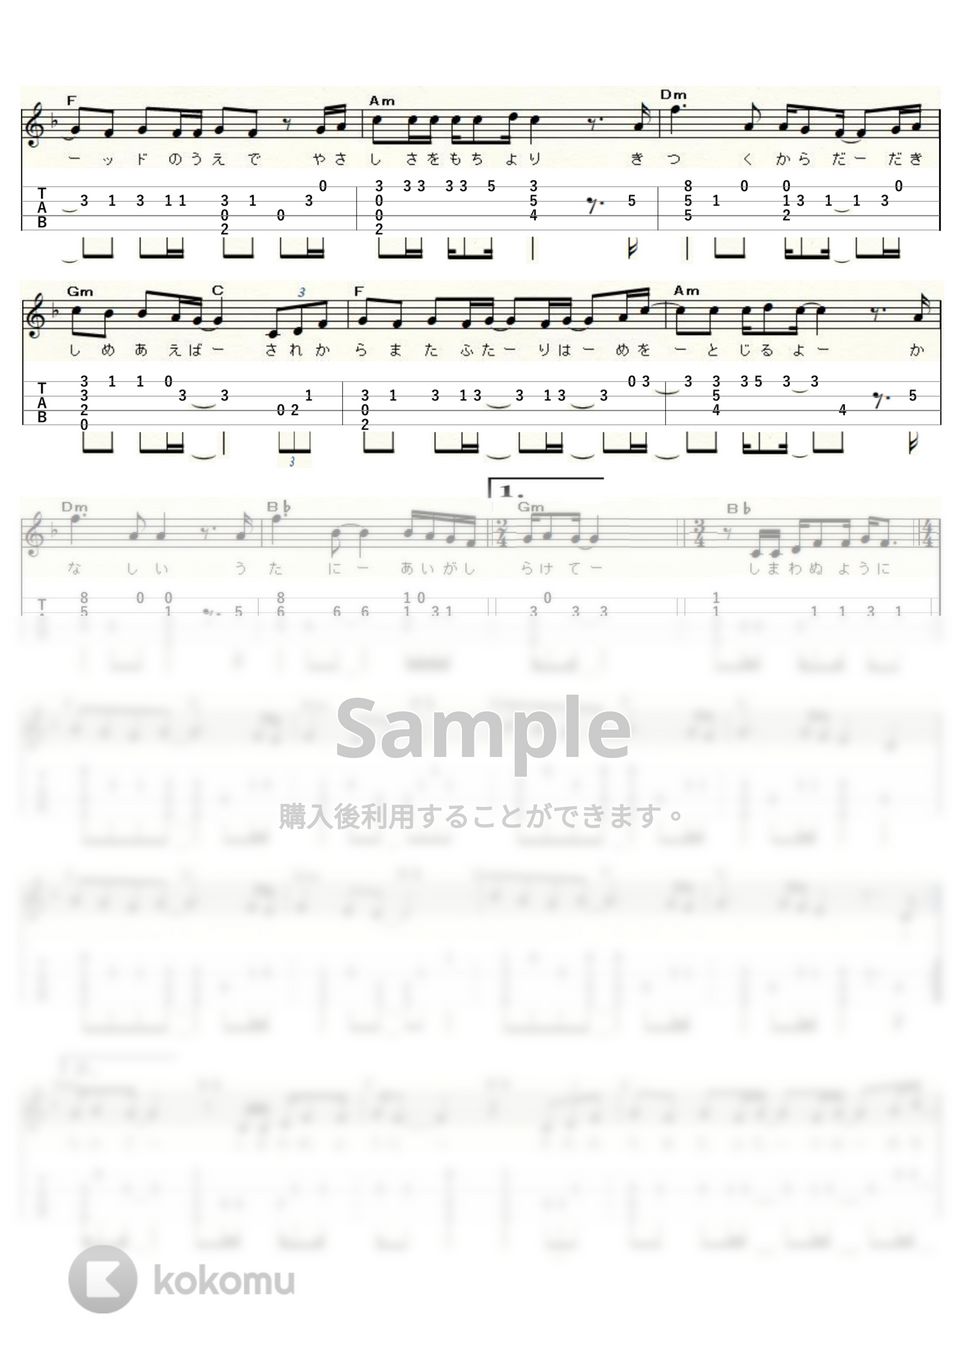 尾崎　豊 - I LOVE YOU (ｳｸﾚﾚｿﾛ / High-G,Low-G / 中級) by ukulelepapa